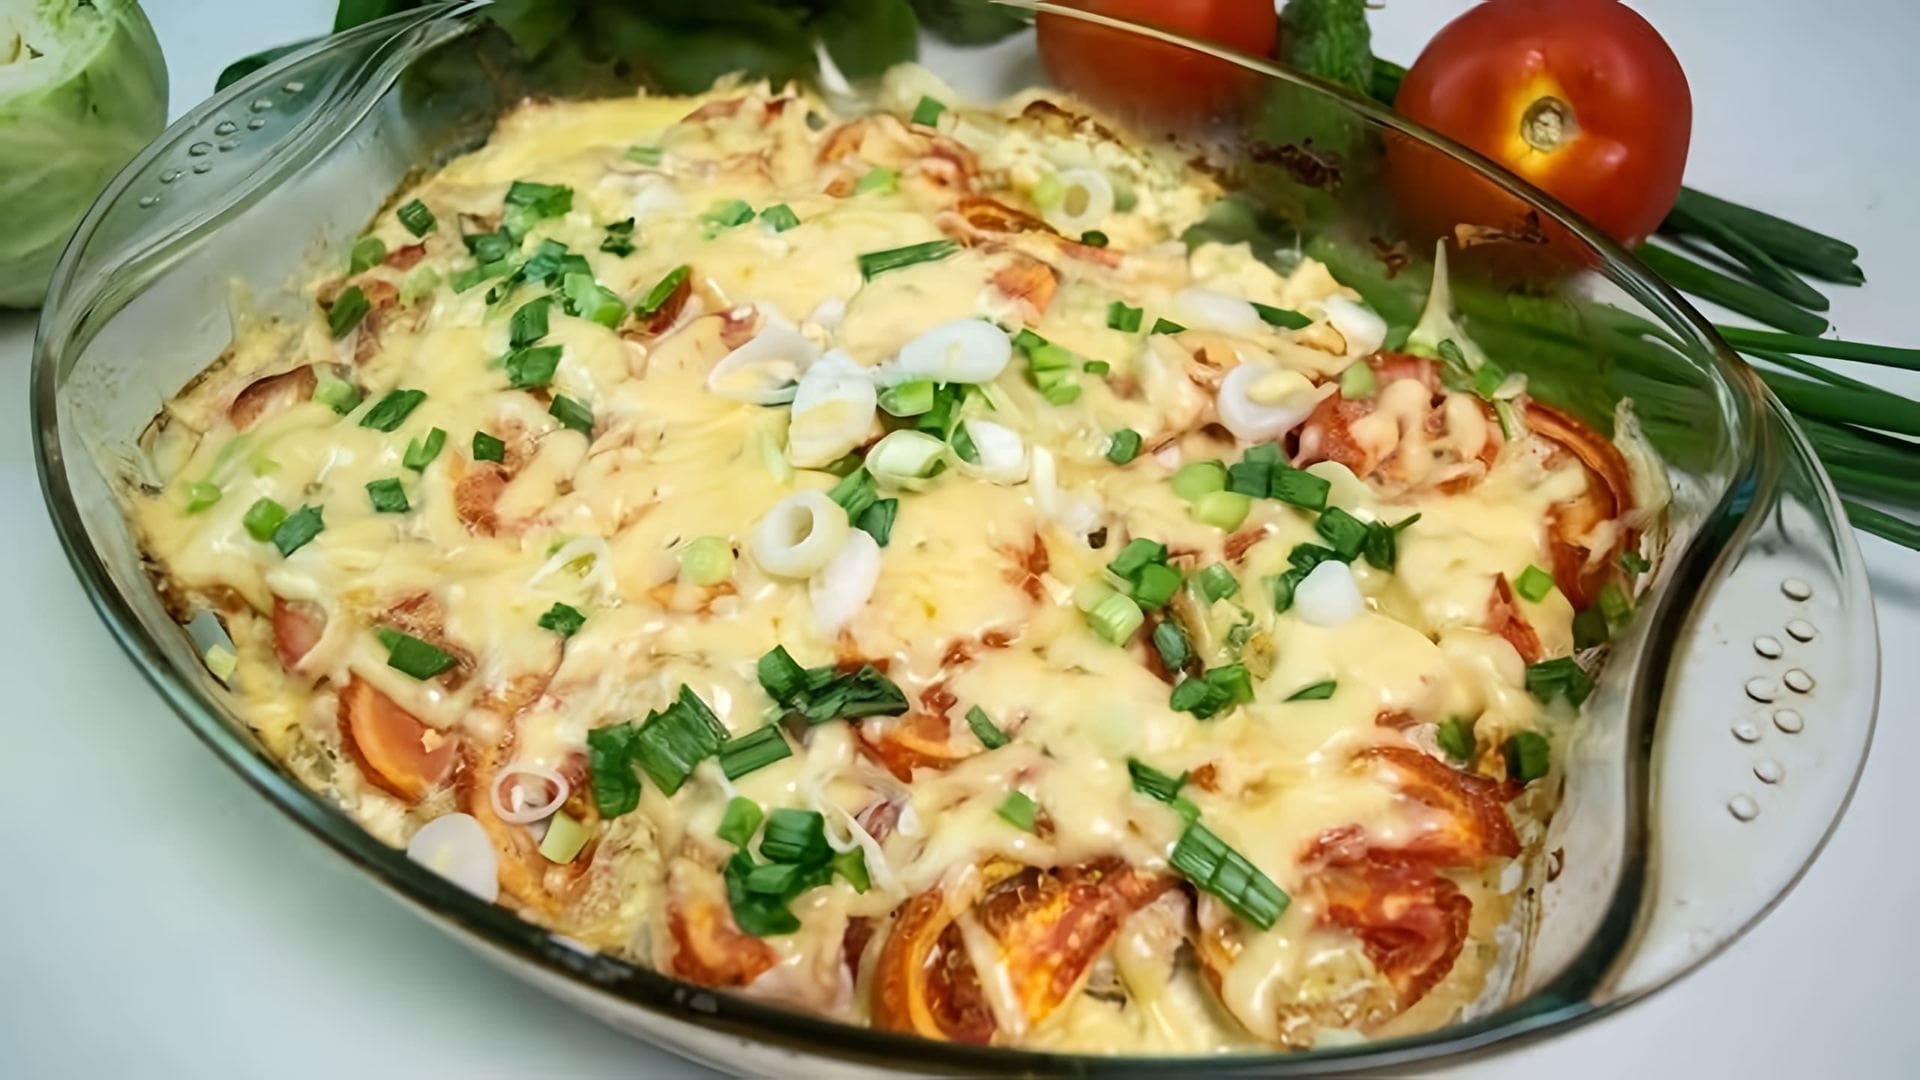 В этом видео демонстрируется процесс приготовления запеканки из картофеля, курицы и помидоров